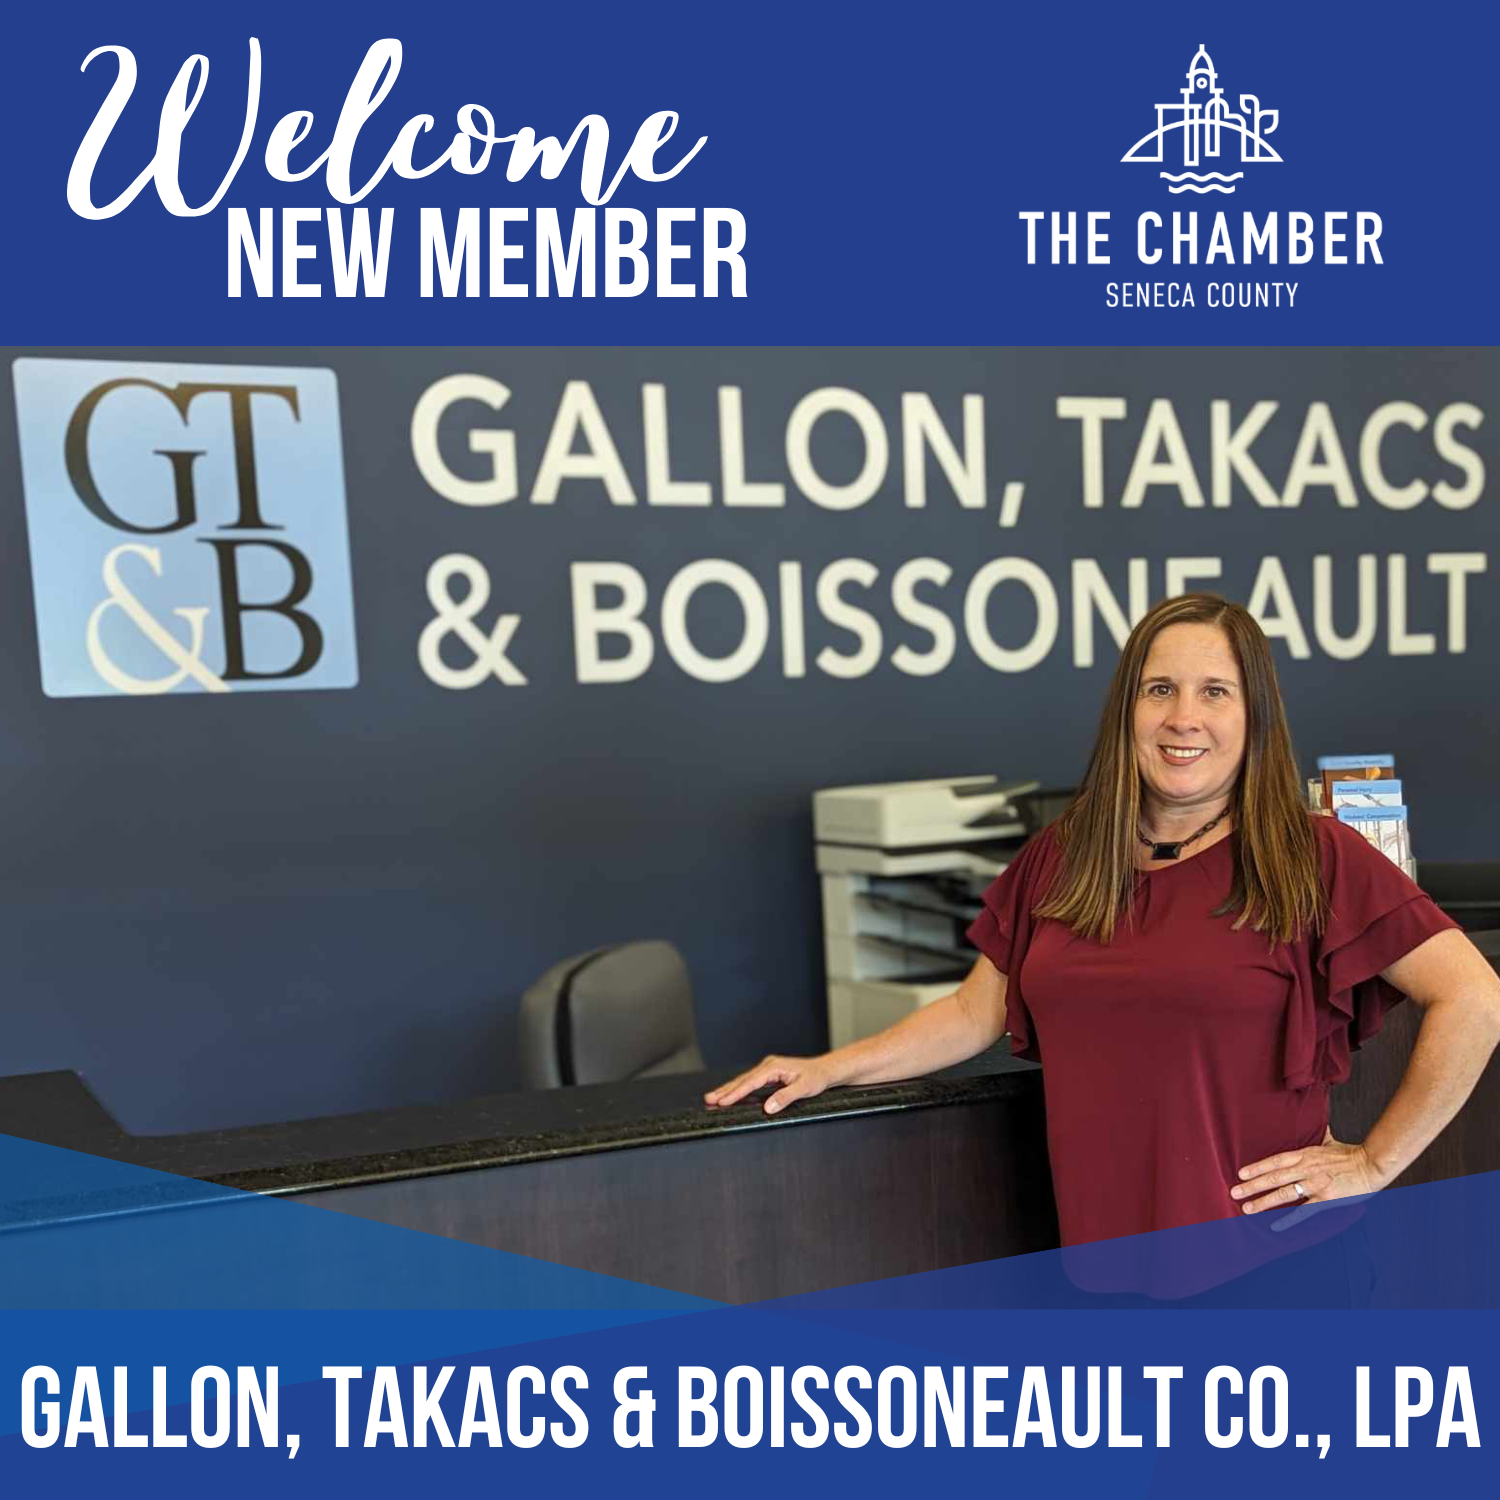 New Member: Gallon, Takacs & Boissoneault, Co., LPA